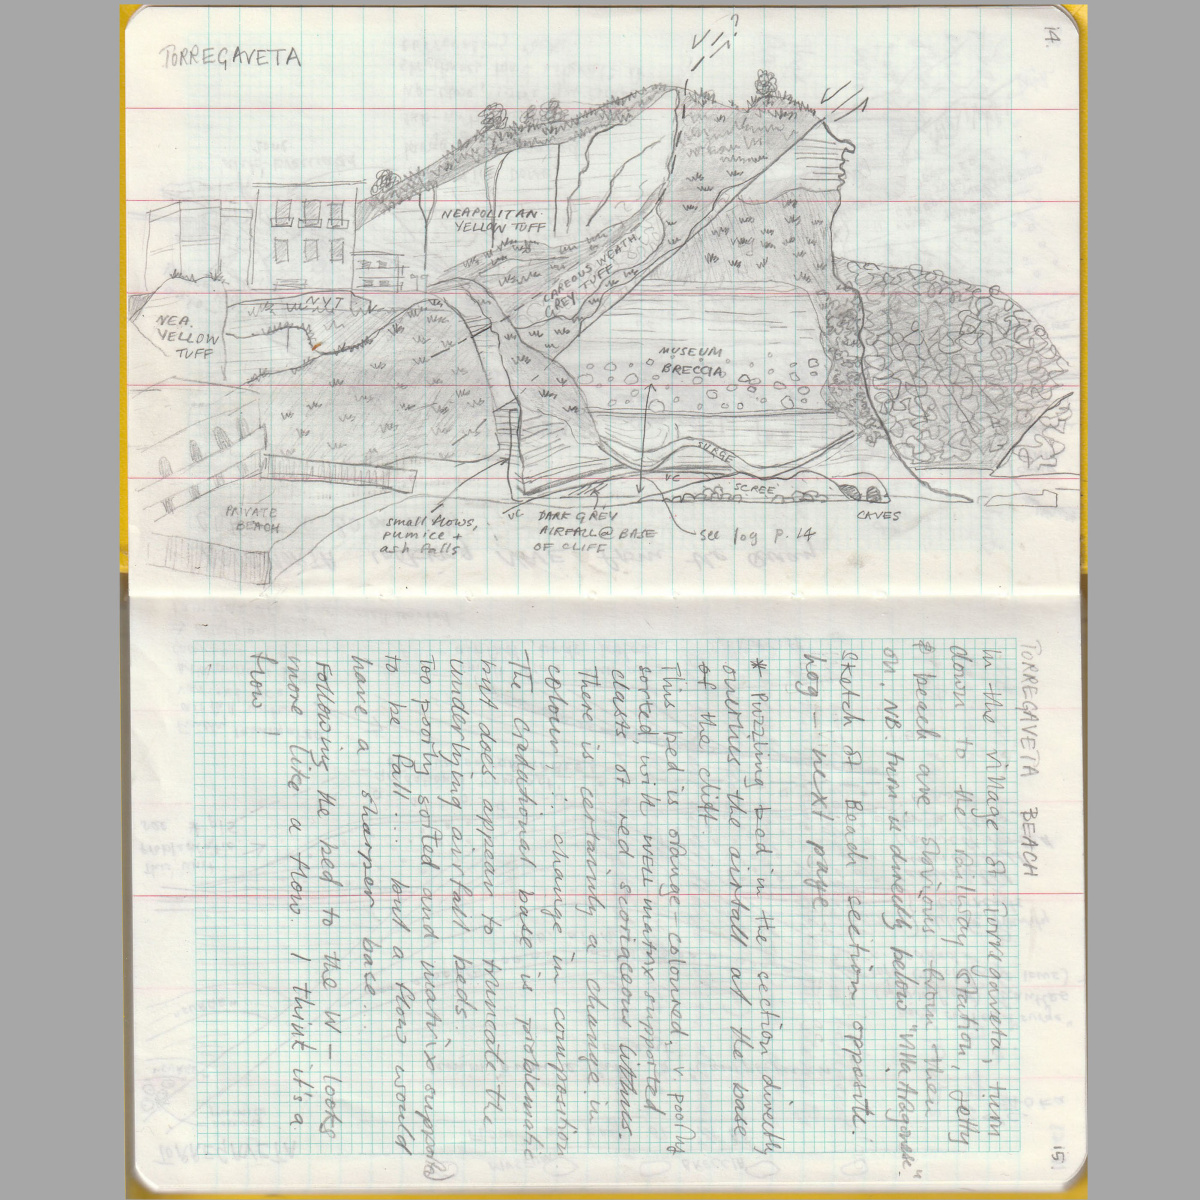 Geological Field Sketch: Torregavata